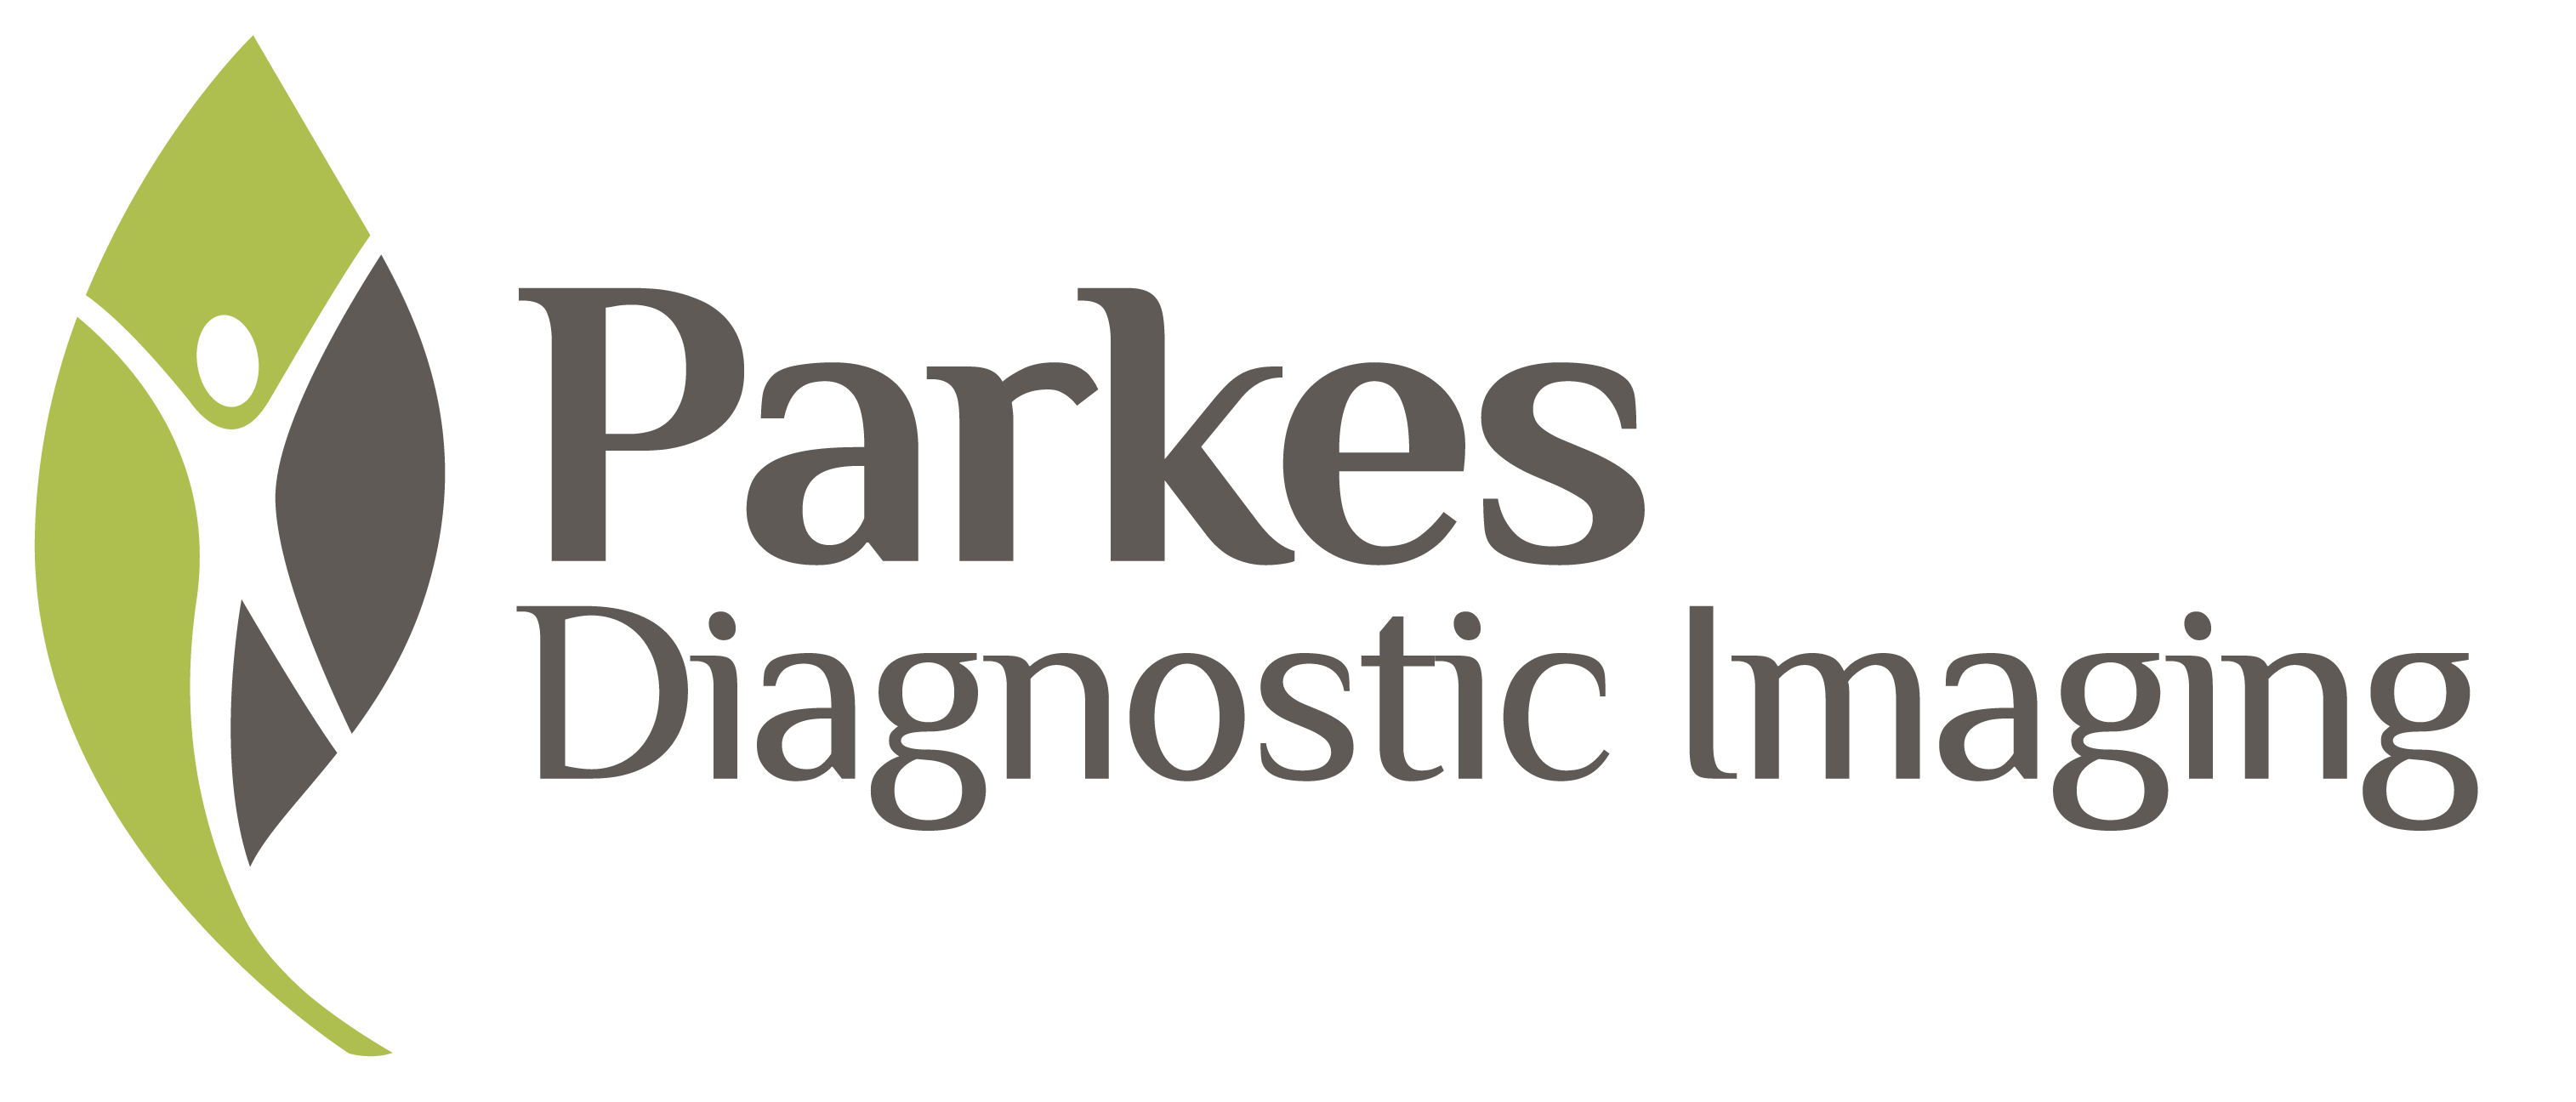 Parkes Diagnostic Imaging